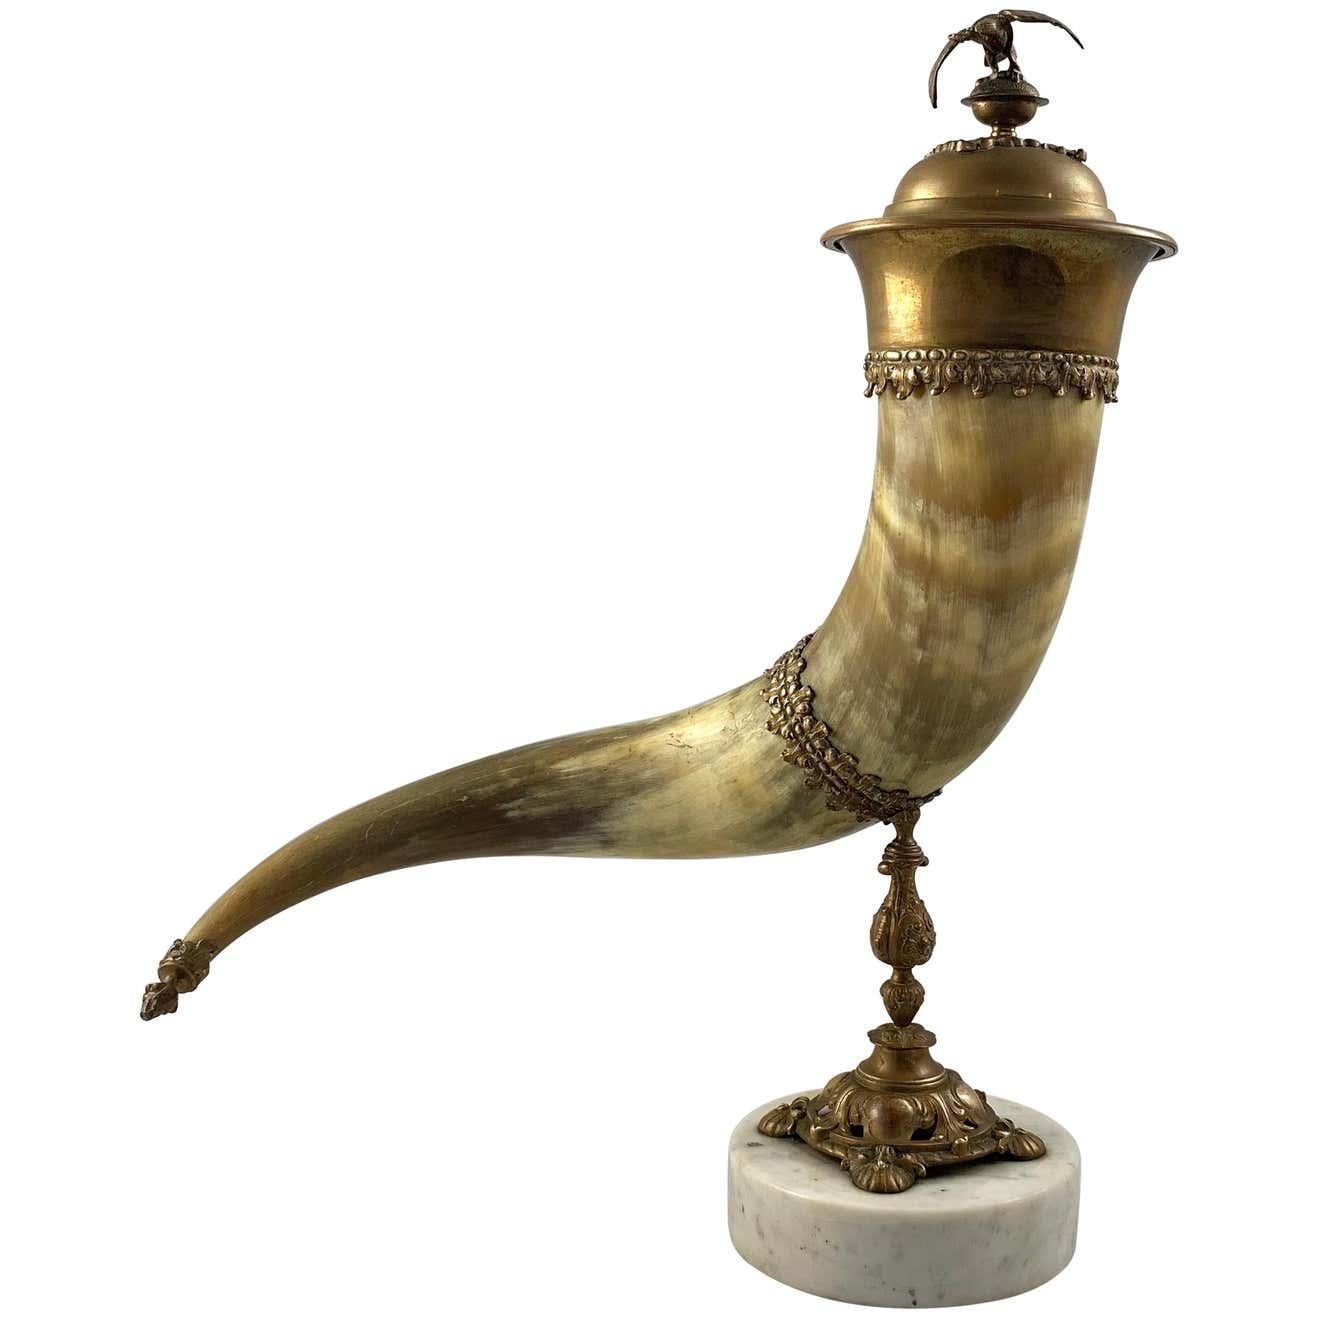 Ein feines Horn und vergoldetes Messing montiert Füllhorn mit Deckel.

19. Jahrhundert.

Gestützt auf einen gegossenen Ständer mit quadratischem Sockel.